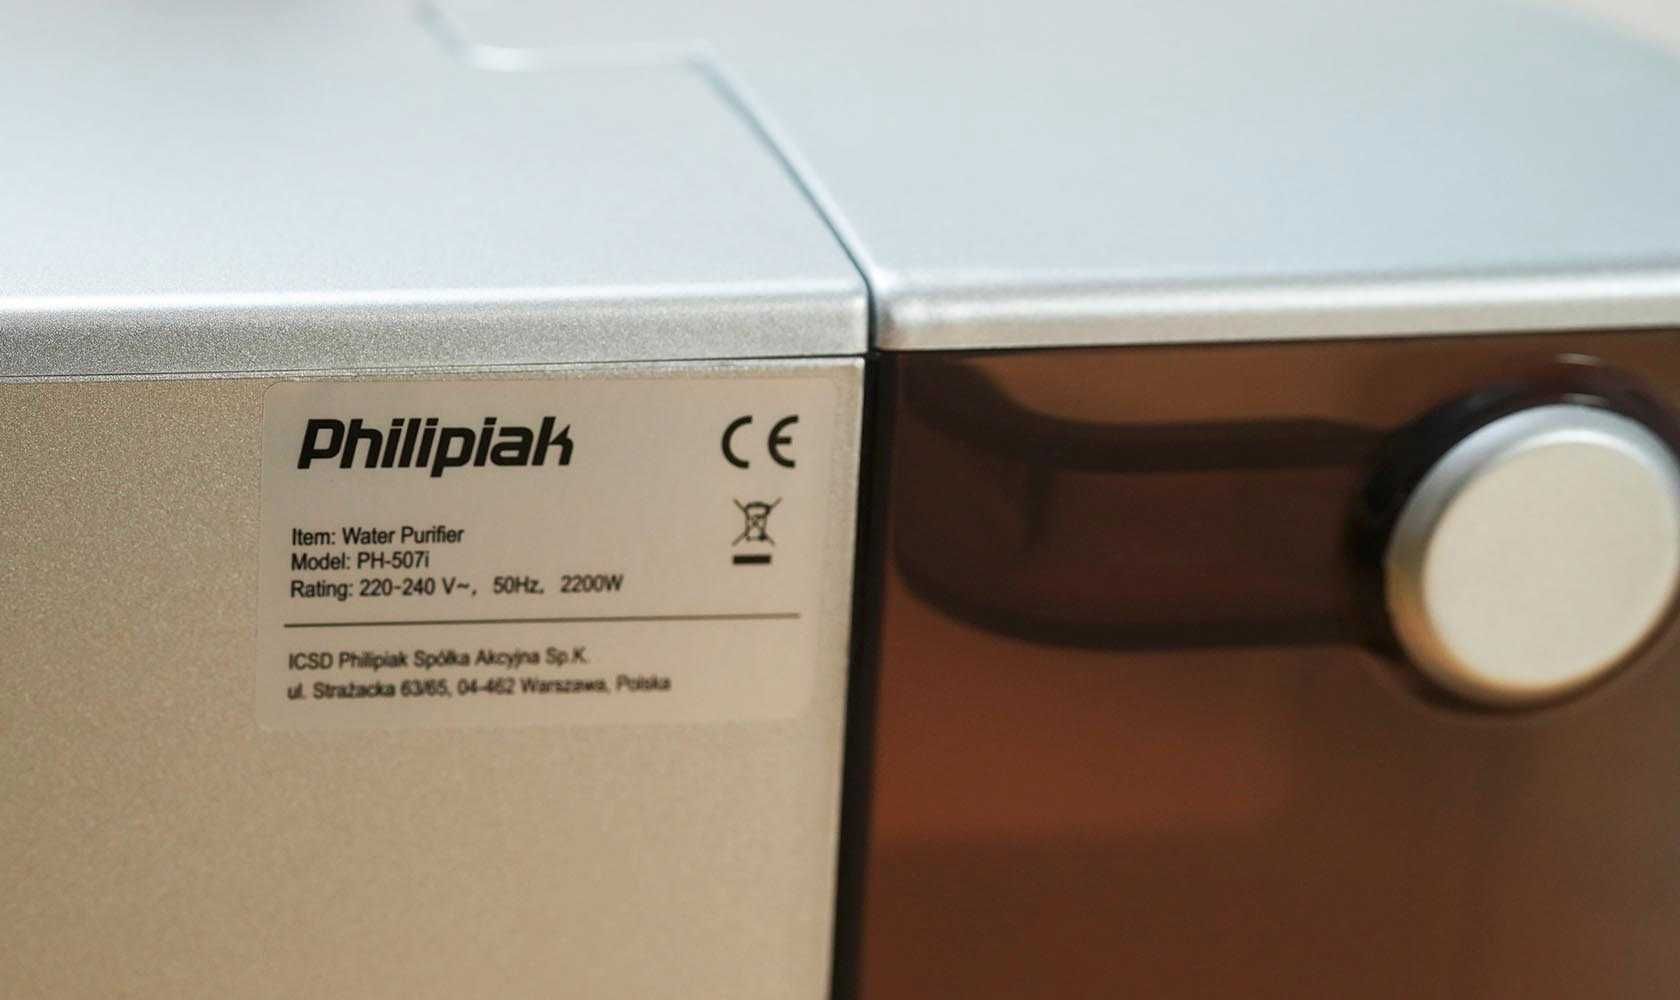 Philipiak filtr wody PH-507i + gratis Mop wibracyjny Philipiak! NOWY